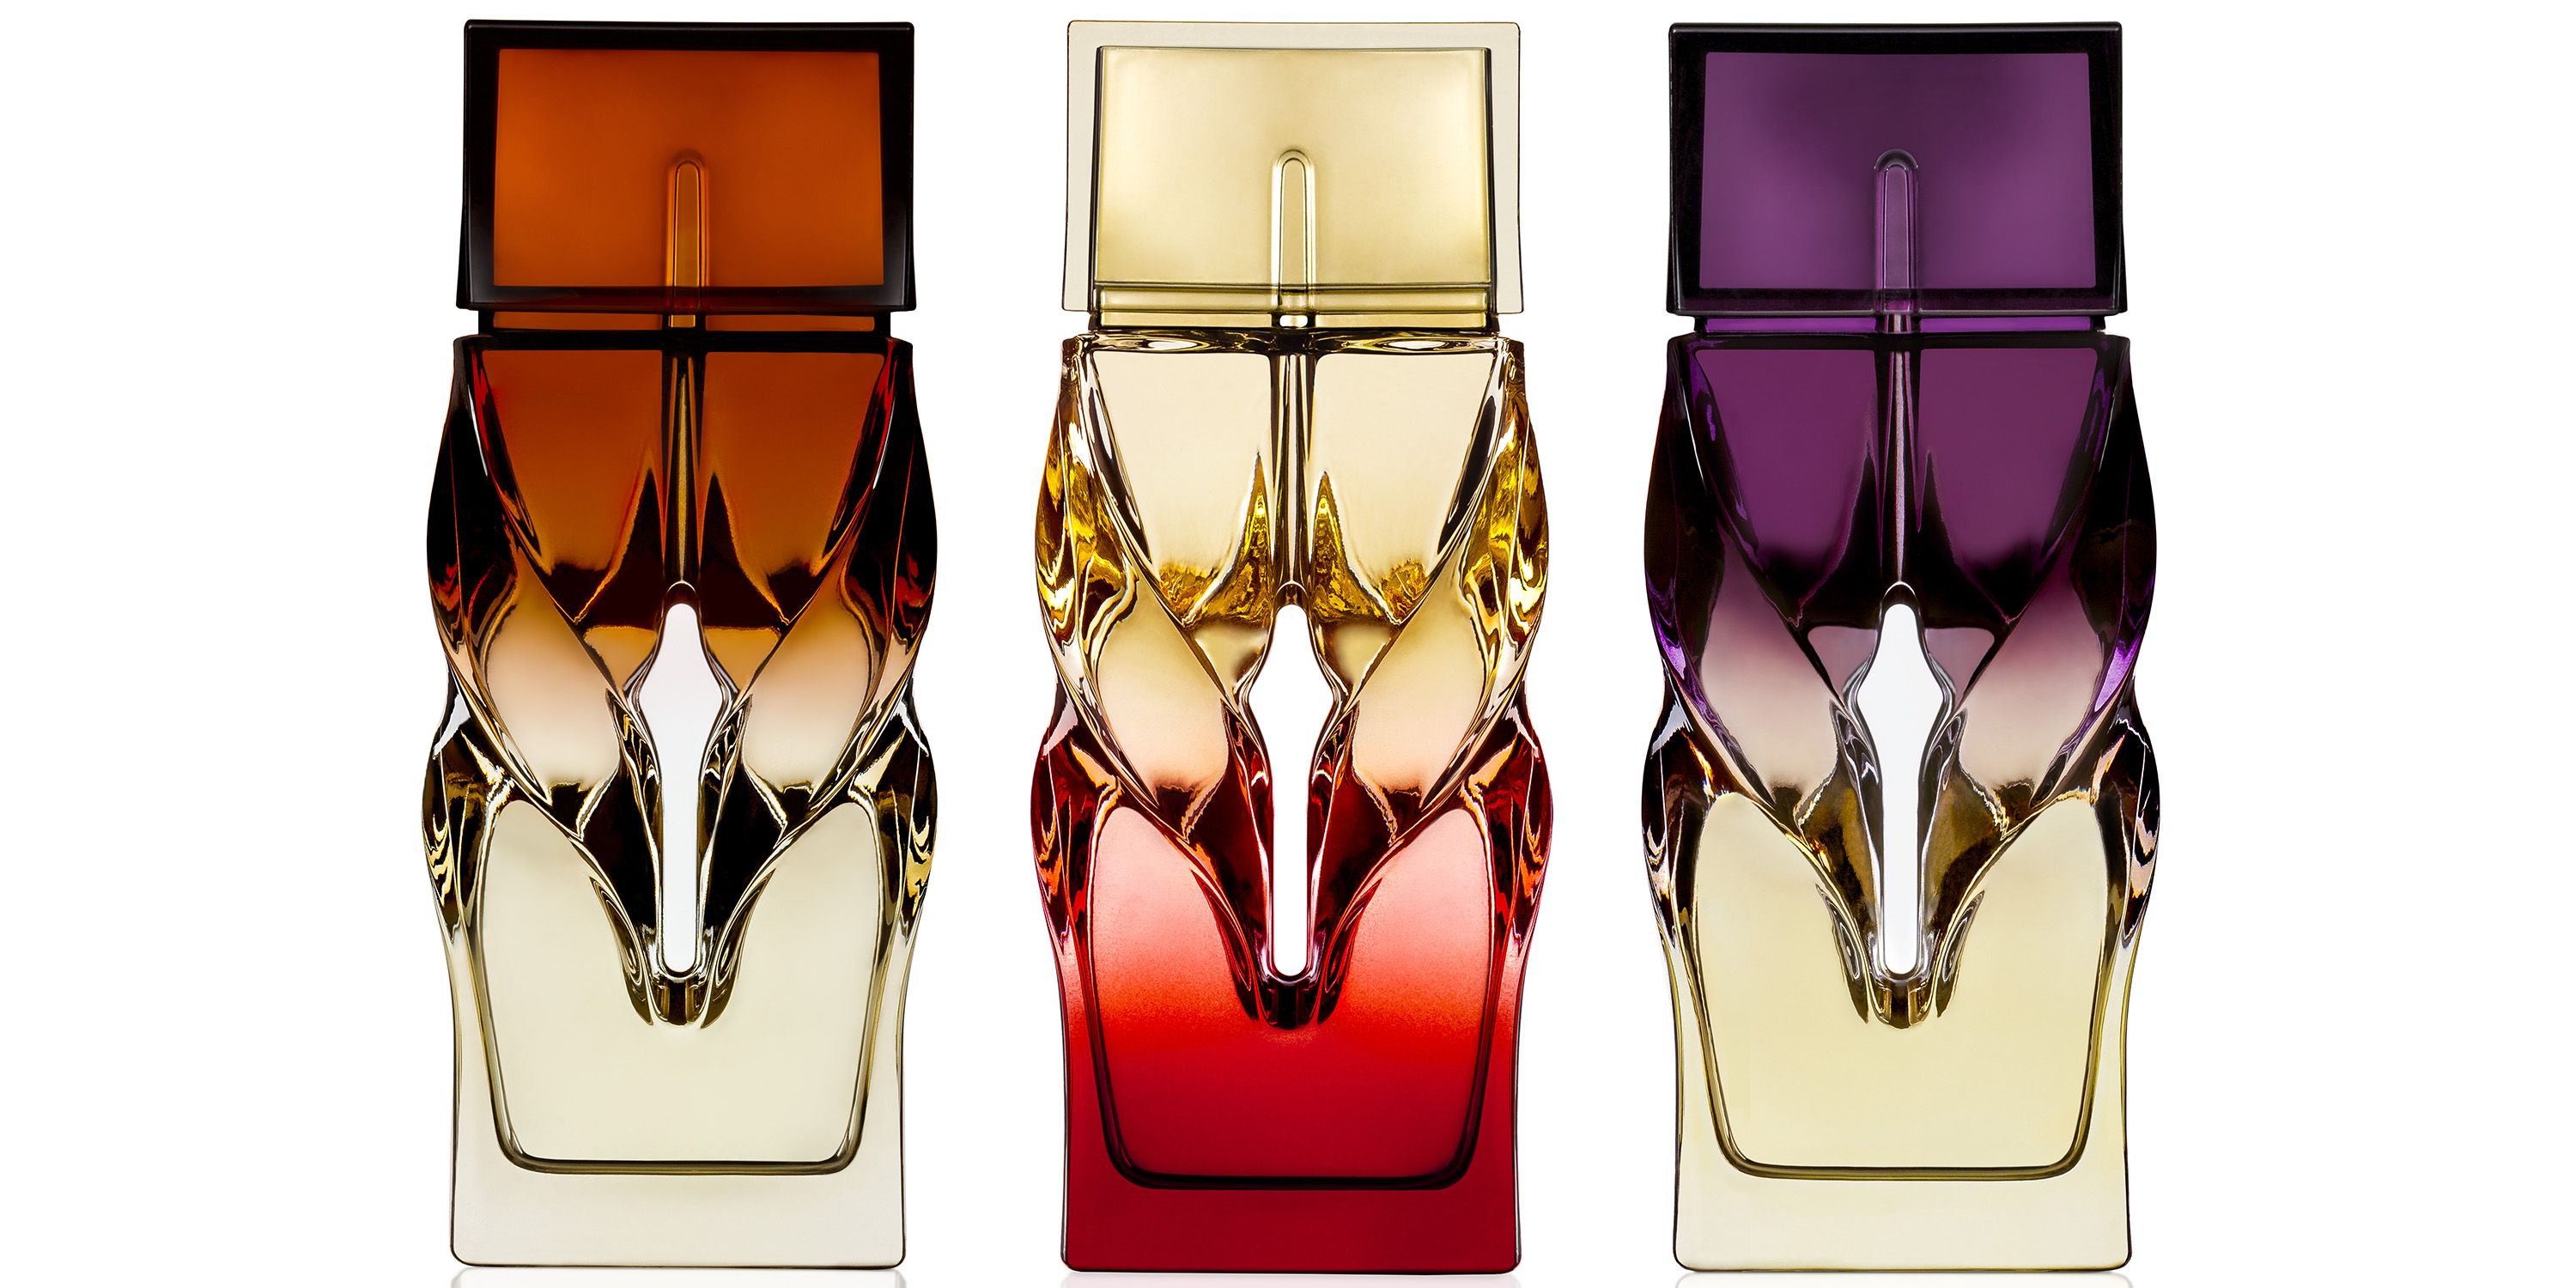 Architect Thomas Heatherwick Designs LOUBOUTIN Perfume Bottles